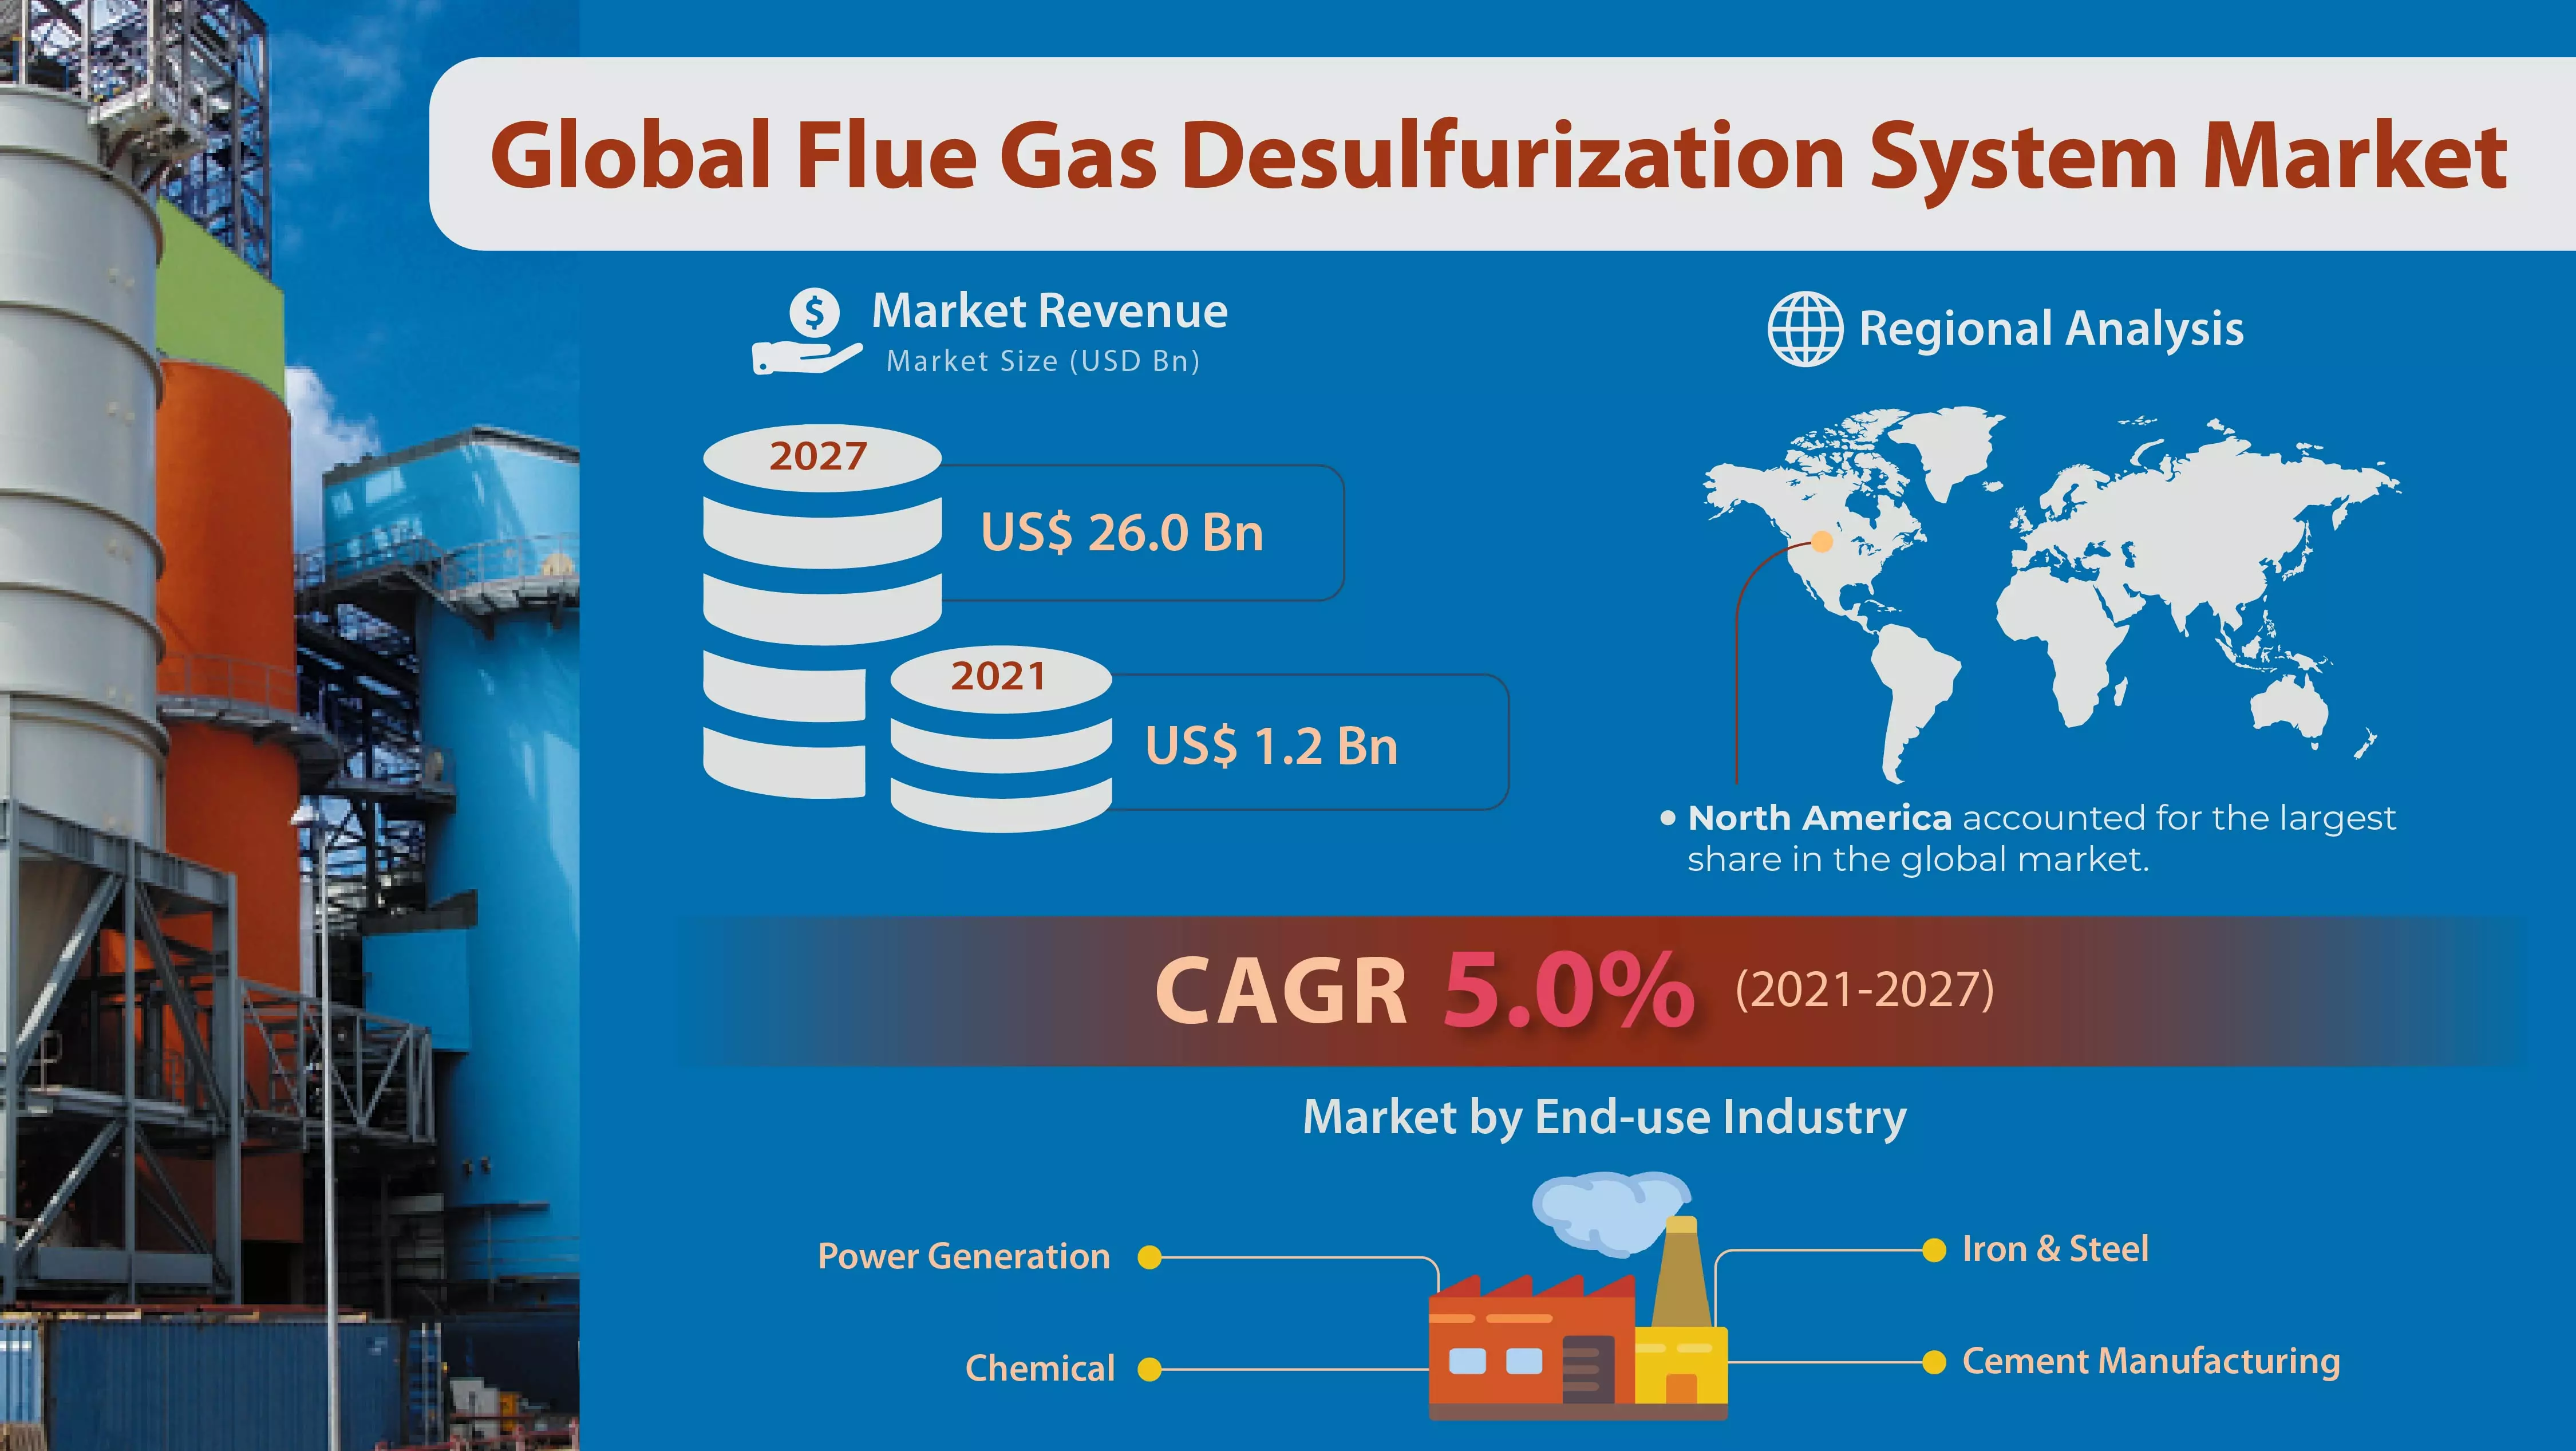 Flue Gas Desulfurization System Market